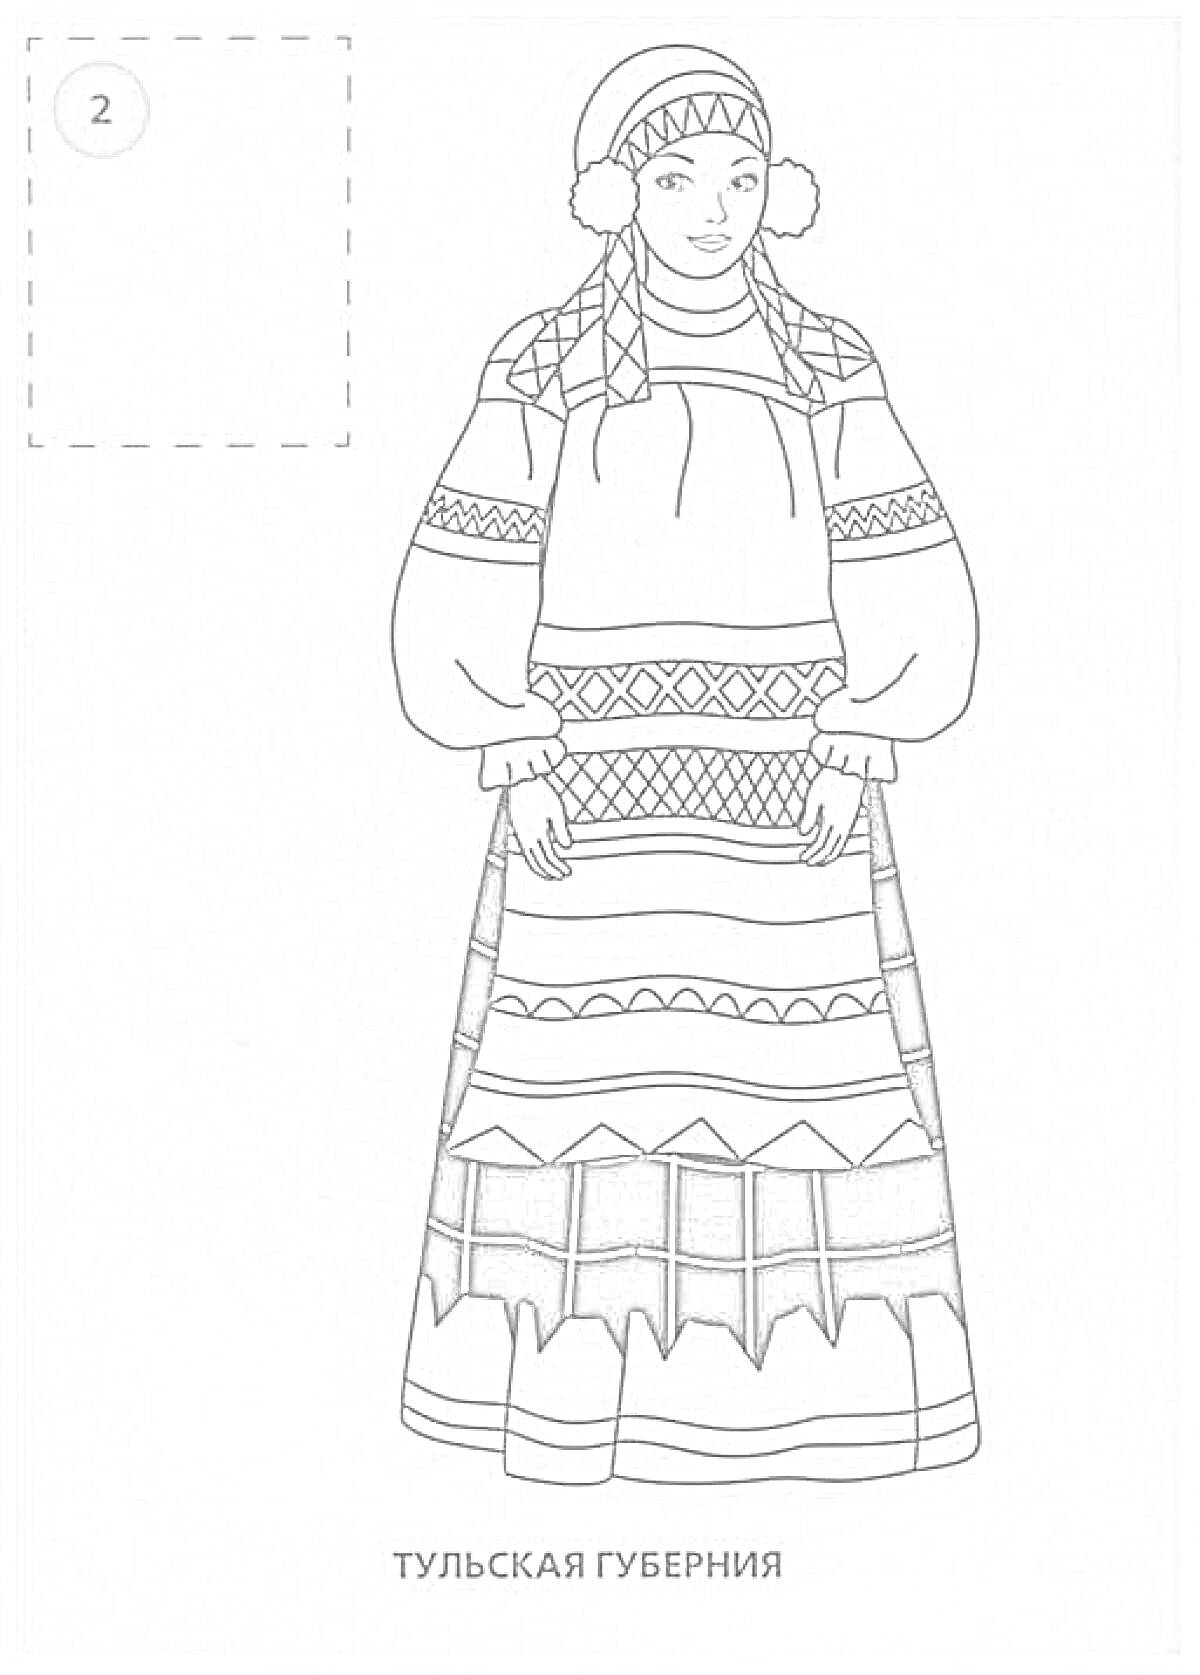 Раскраска Костюм женщины из Тульской губернии, включающий головной убор с узорами, рубаху с широкими рукавами и поясом, сарафан с орнаментами различной формы и цвета, а также обувь.